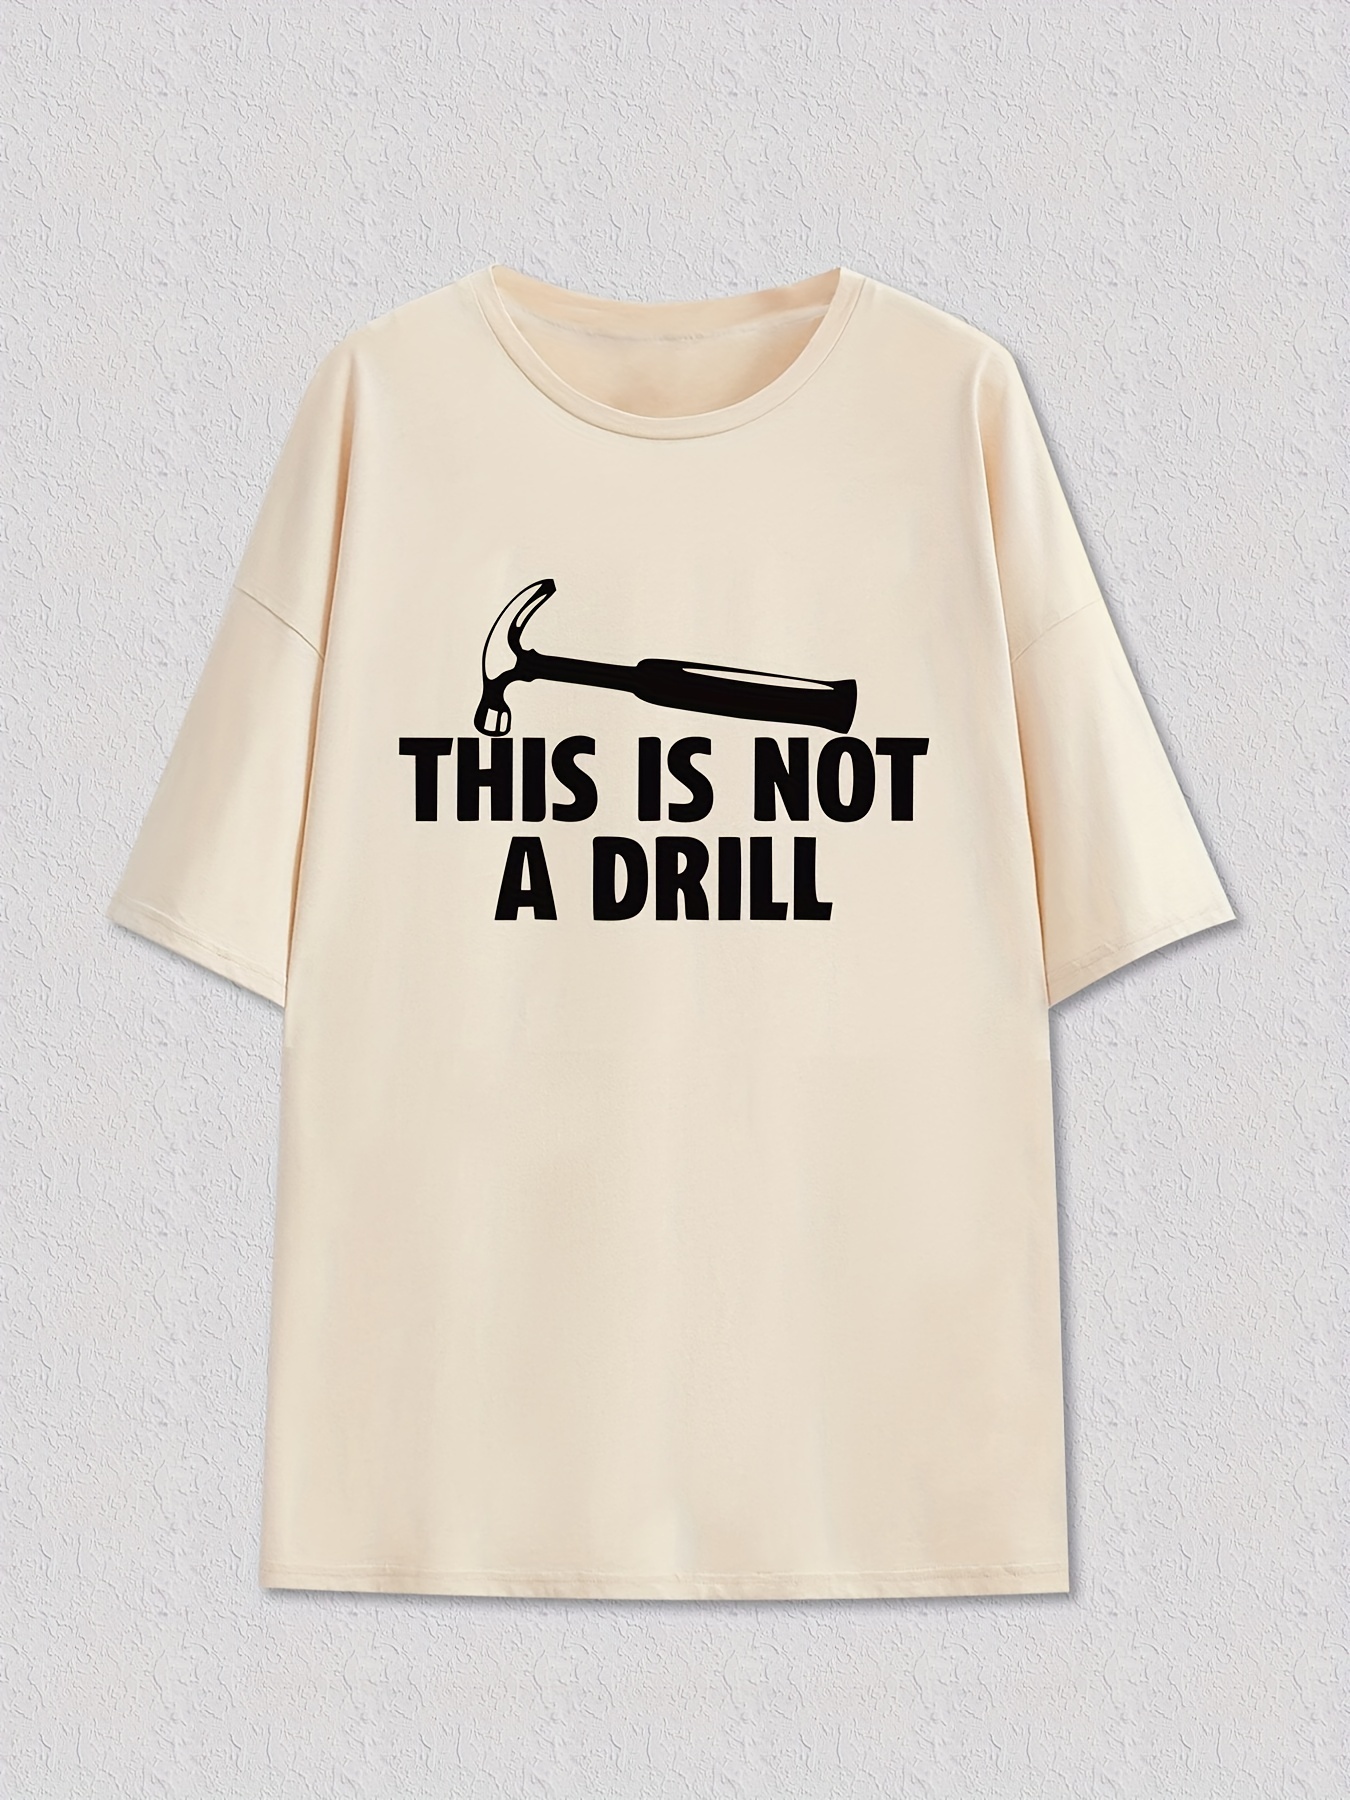 面白い「これはドリルではありません」プリントTシャツ メンズTシャツ